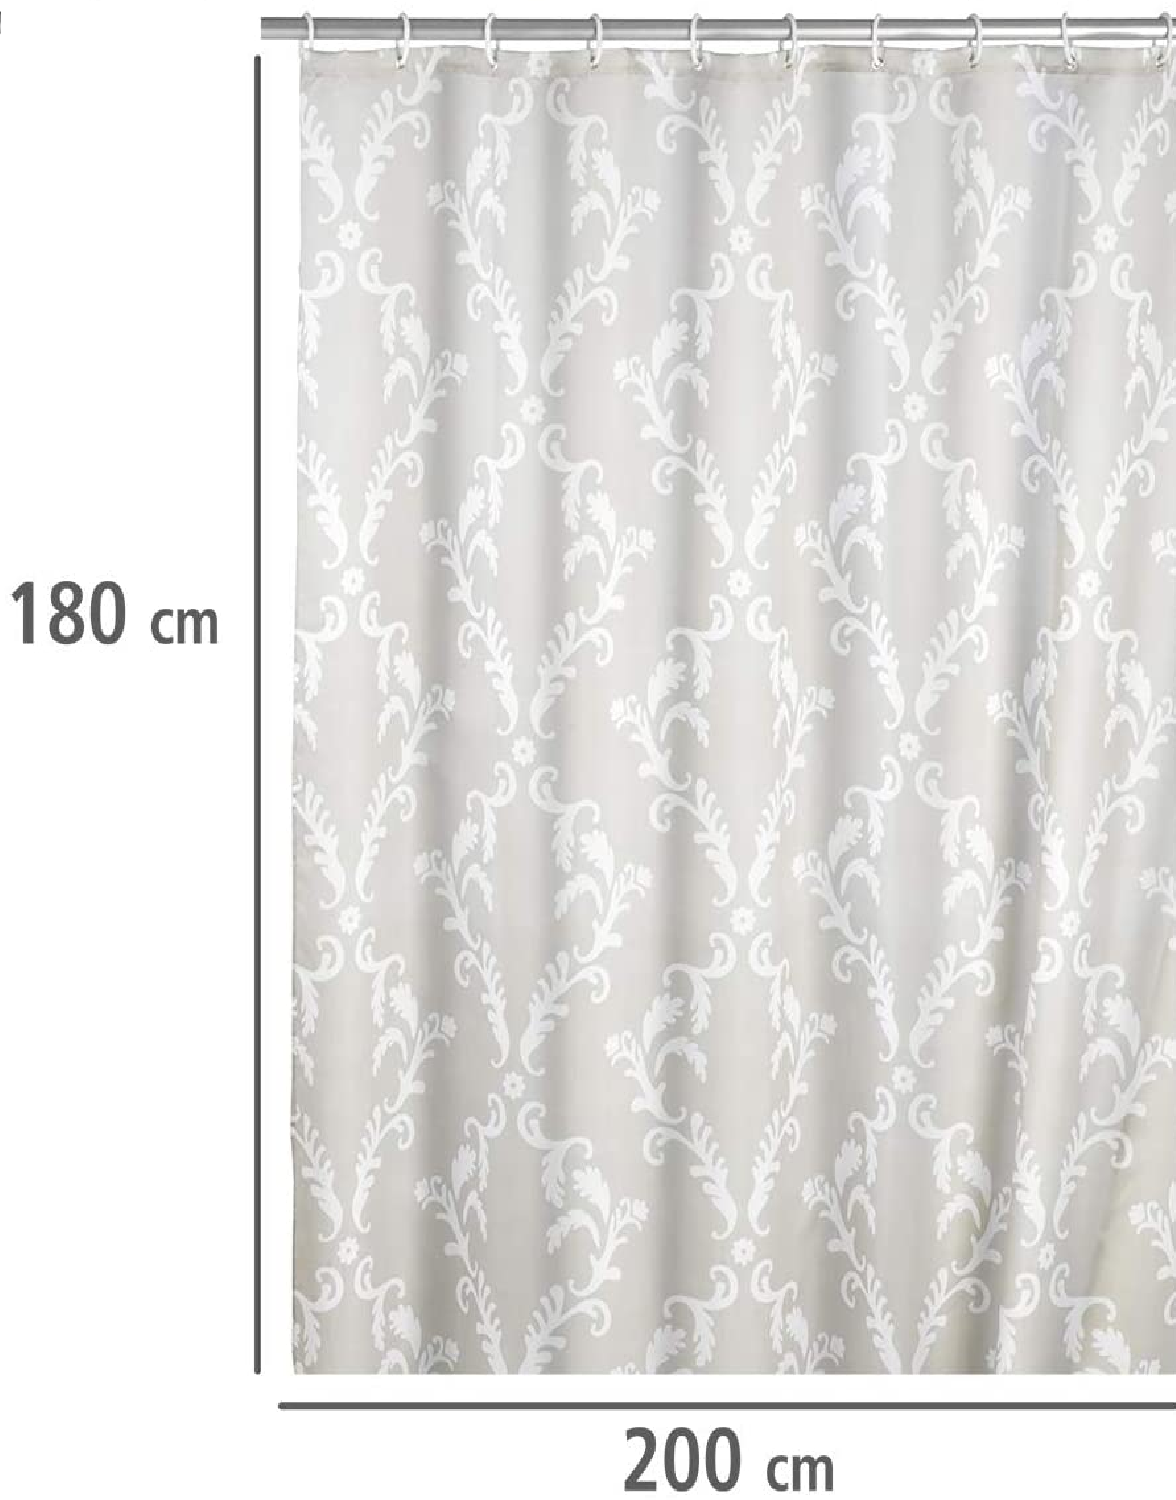 Anti-Schimmel Duschvorhang Baroque, Textil-Vorhang mit Antischimmel Effekt fürs Badezimmer, waschbar, wasserabweisend, mit Ringen zur Befestigung an der Duschstange, 180 x 200 cm